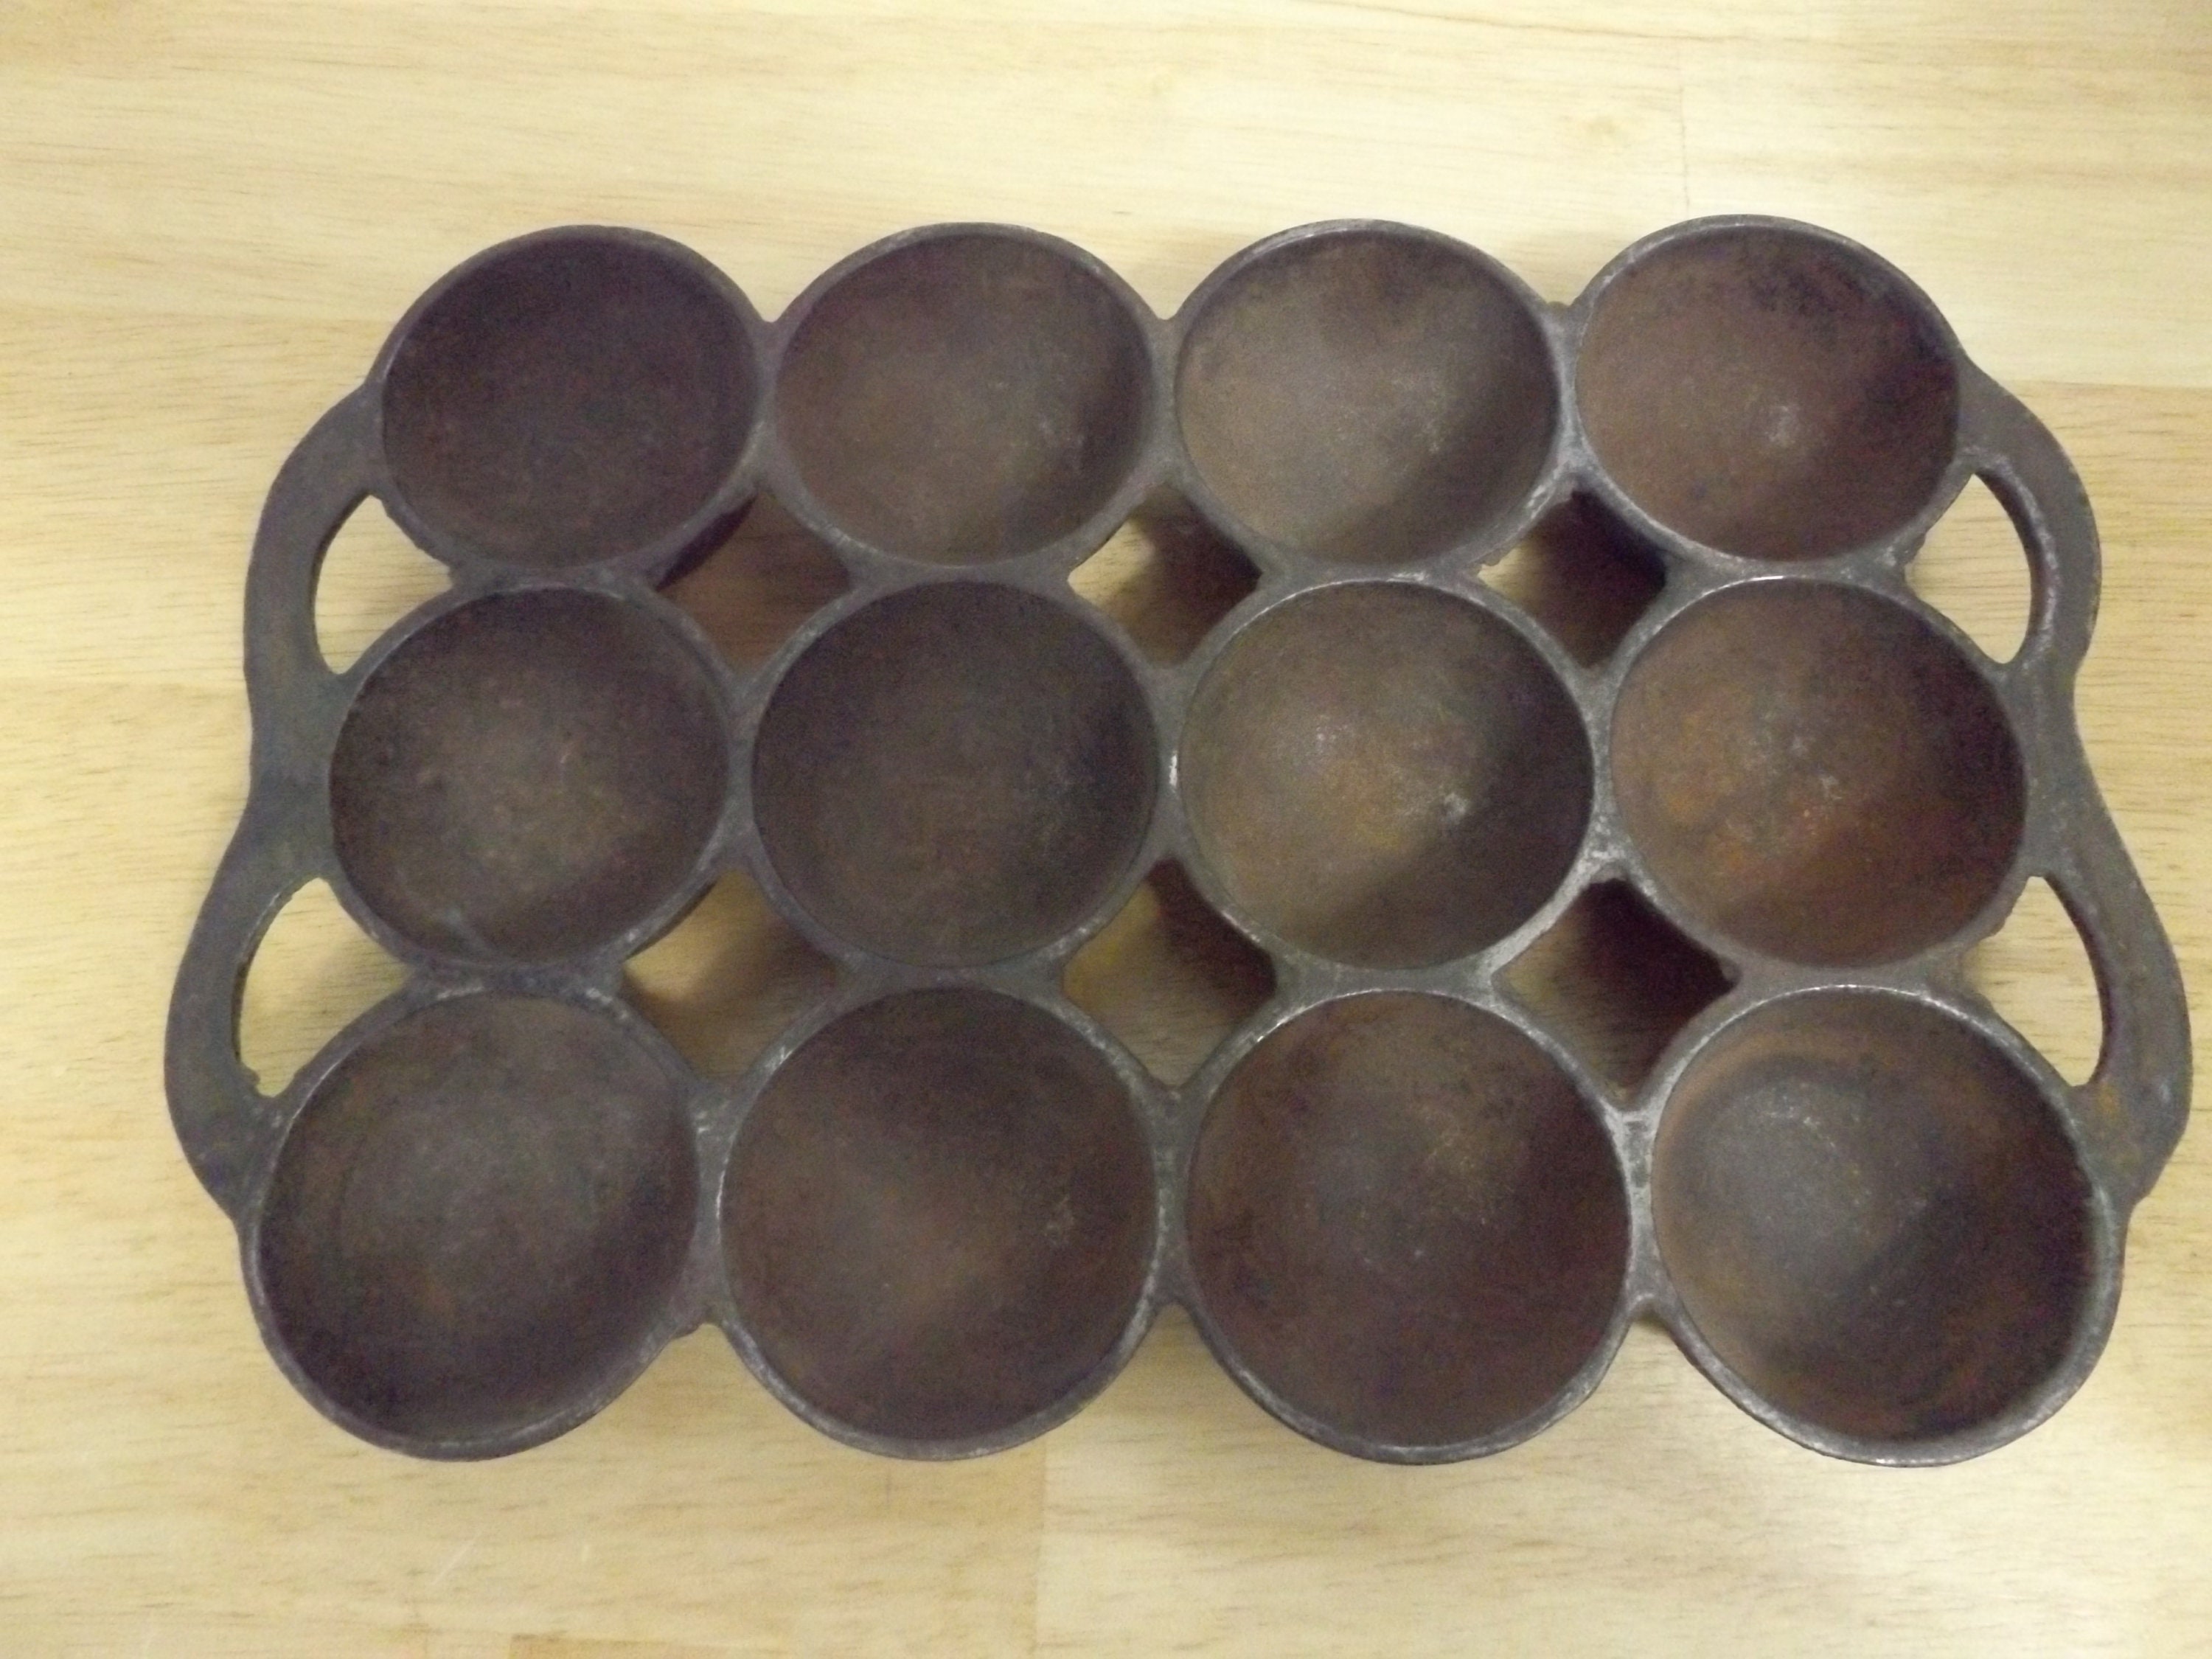 Tin Muffin Pan 6 Small Cups English Circa 1900 Edwardian Gem Pan